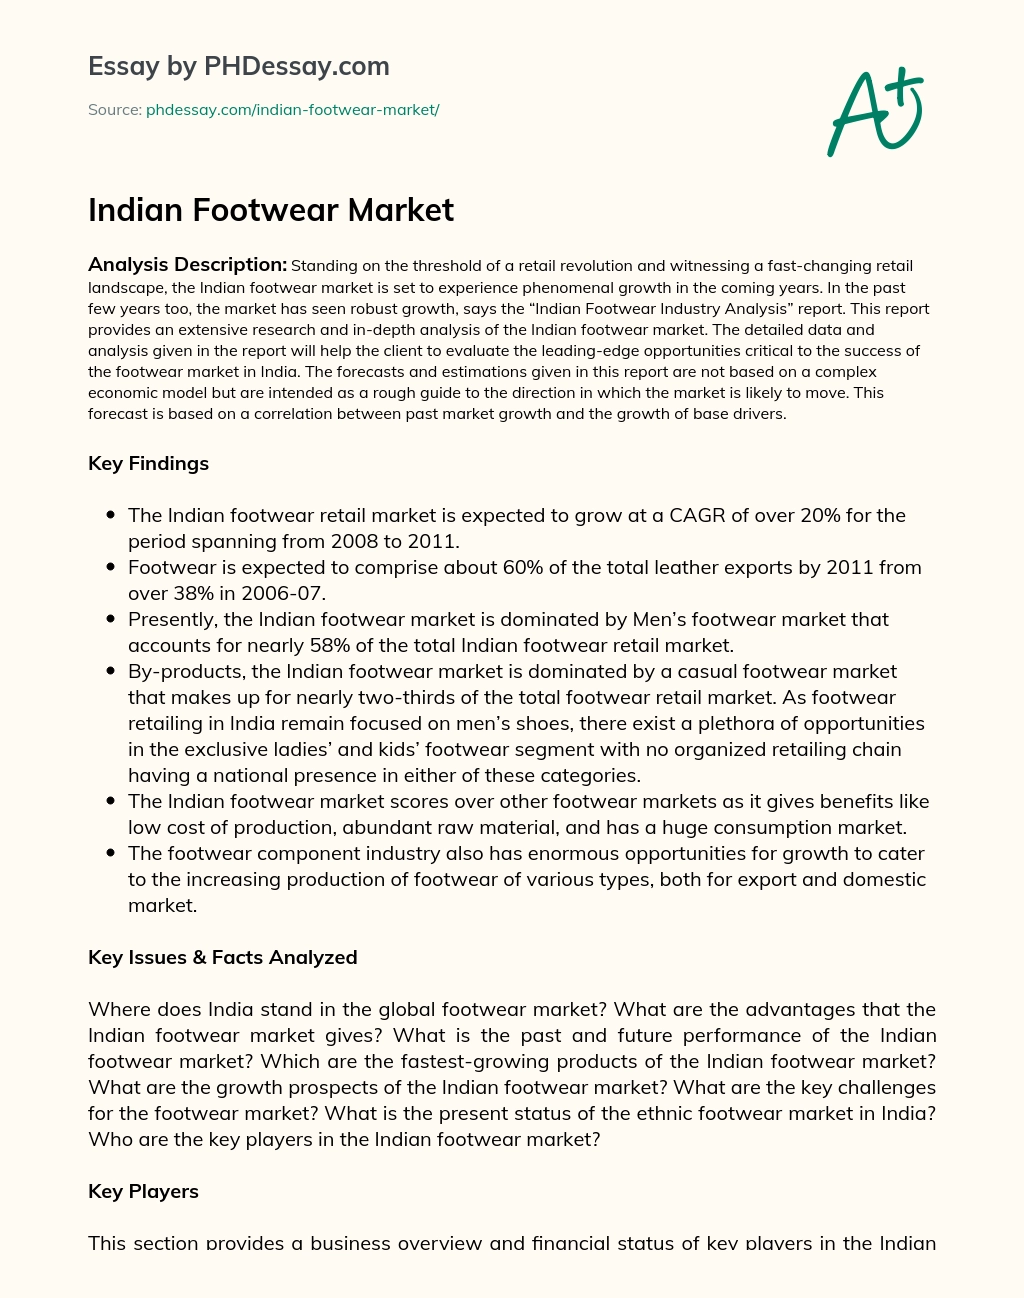 Indian Footwear Market essay